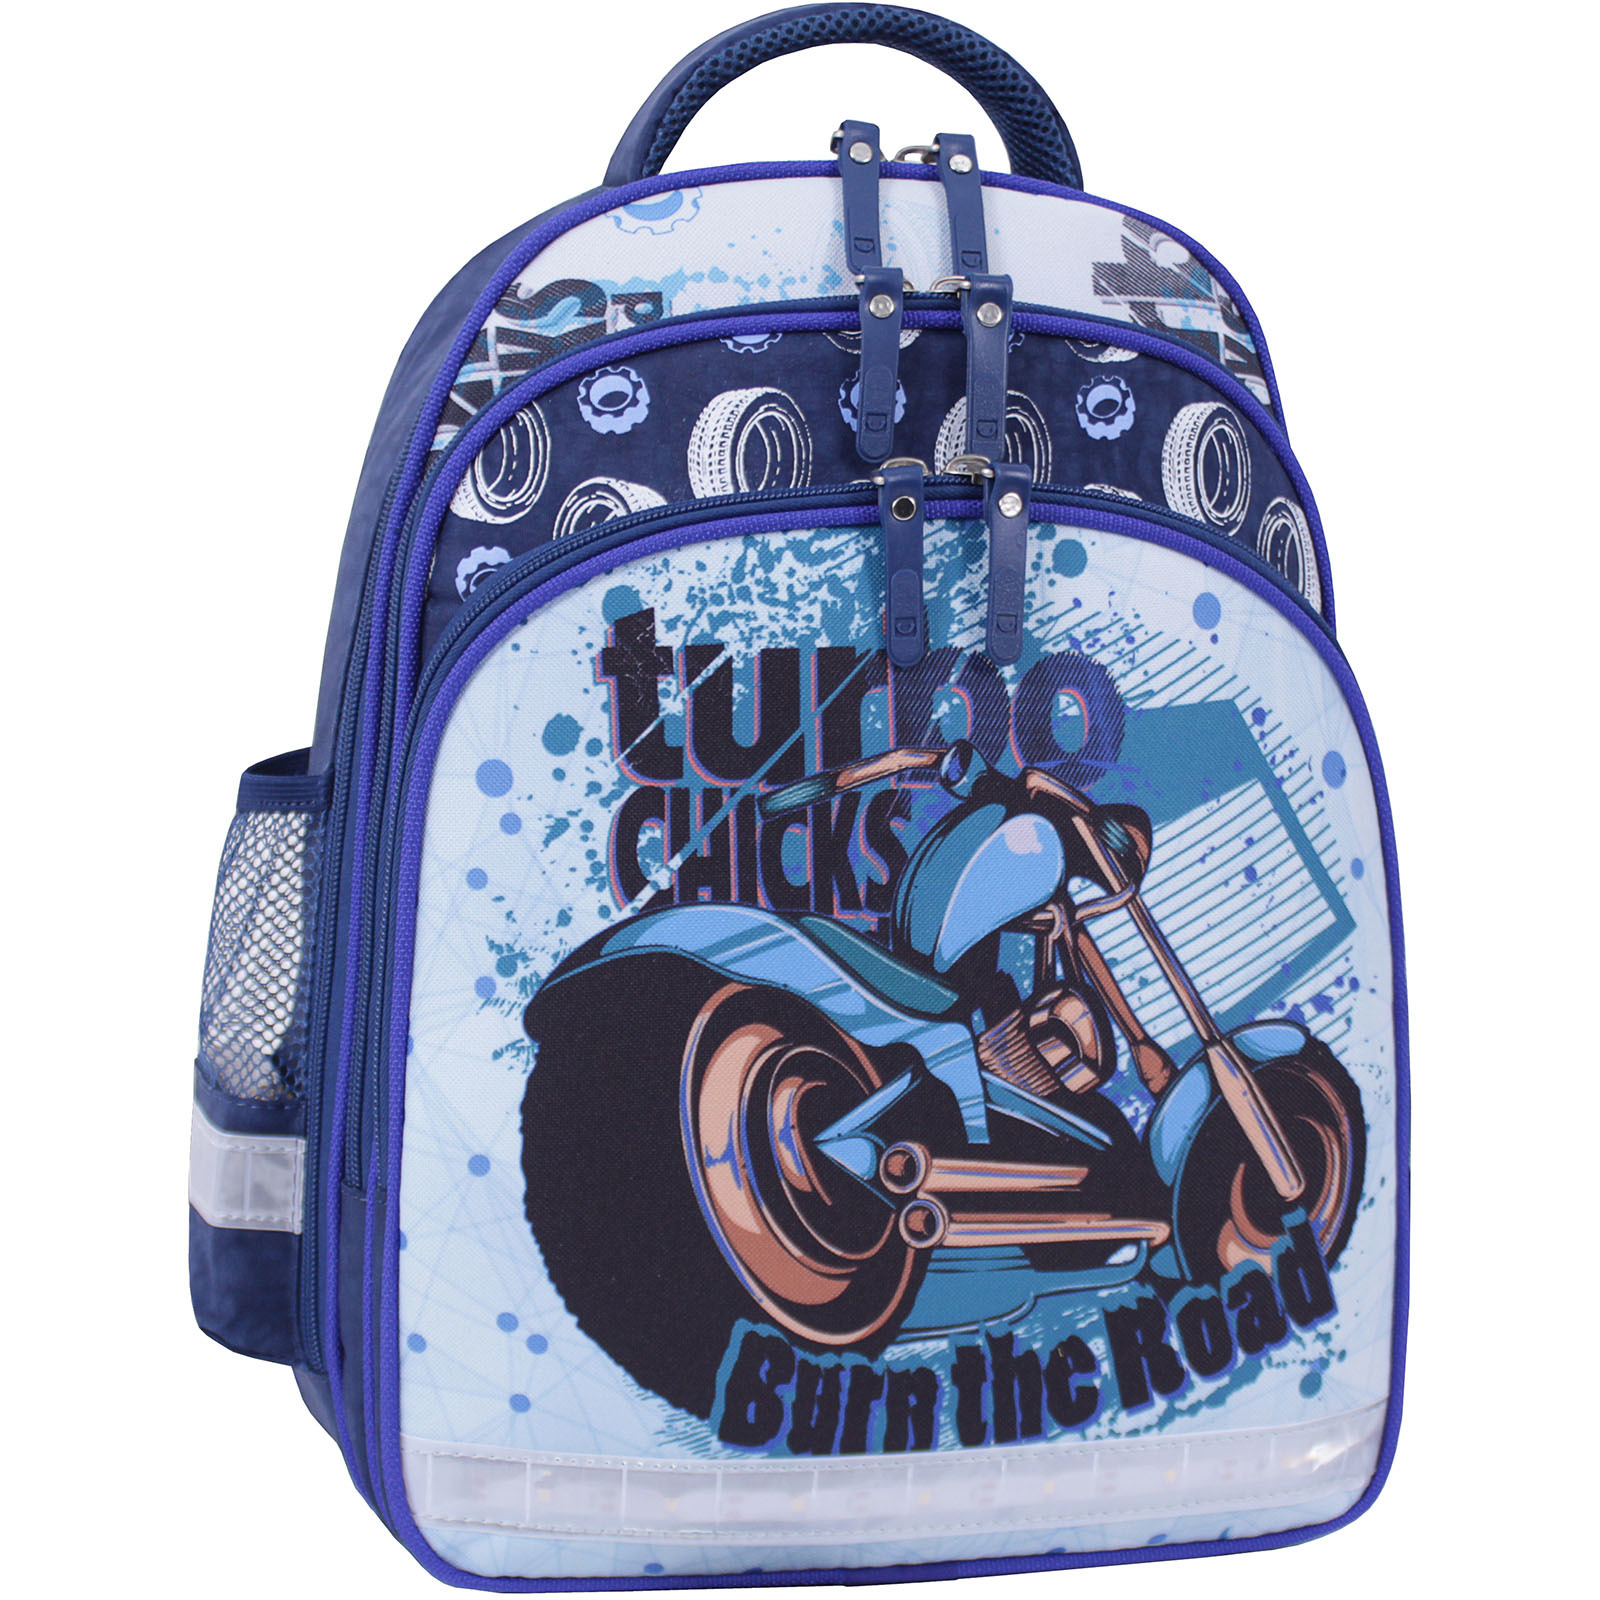 Рюкзак шкільний Bagland Mouse 225 синій 551 (0051370) (85267824)